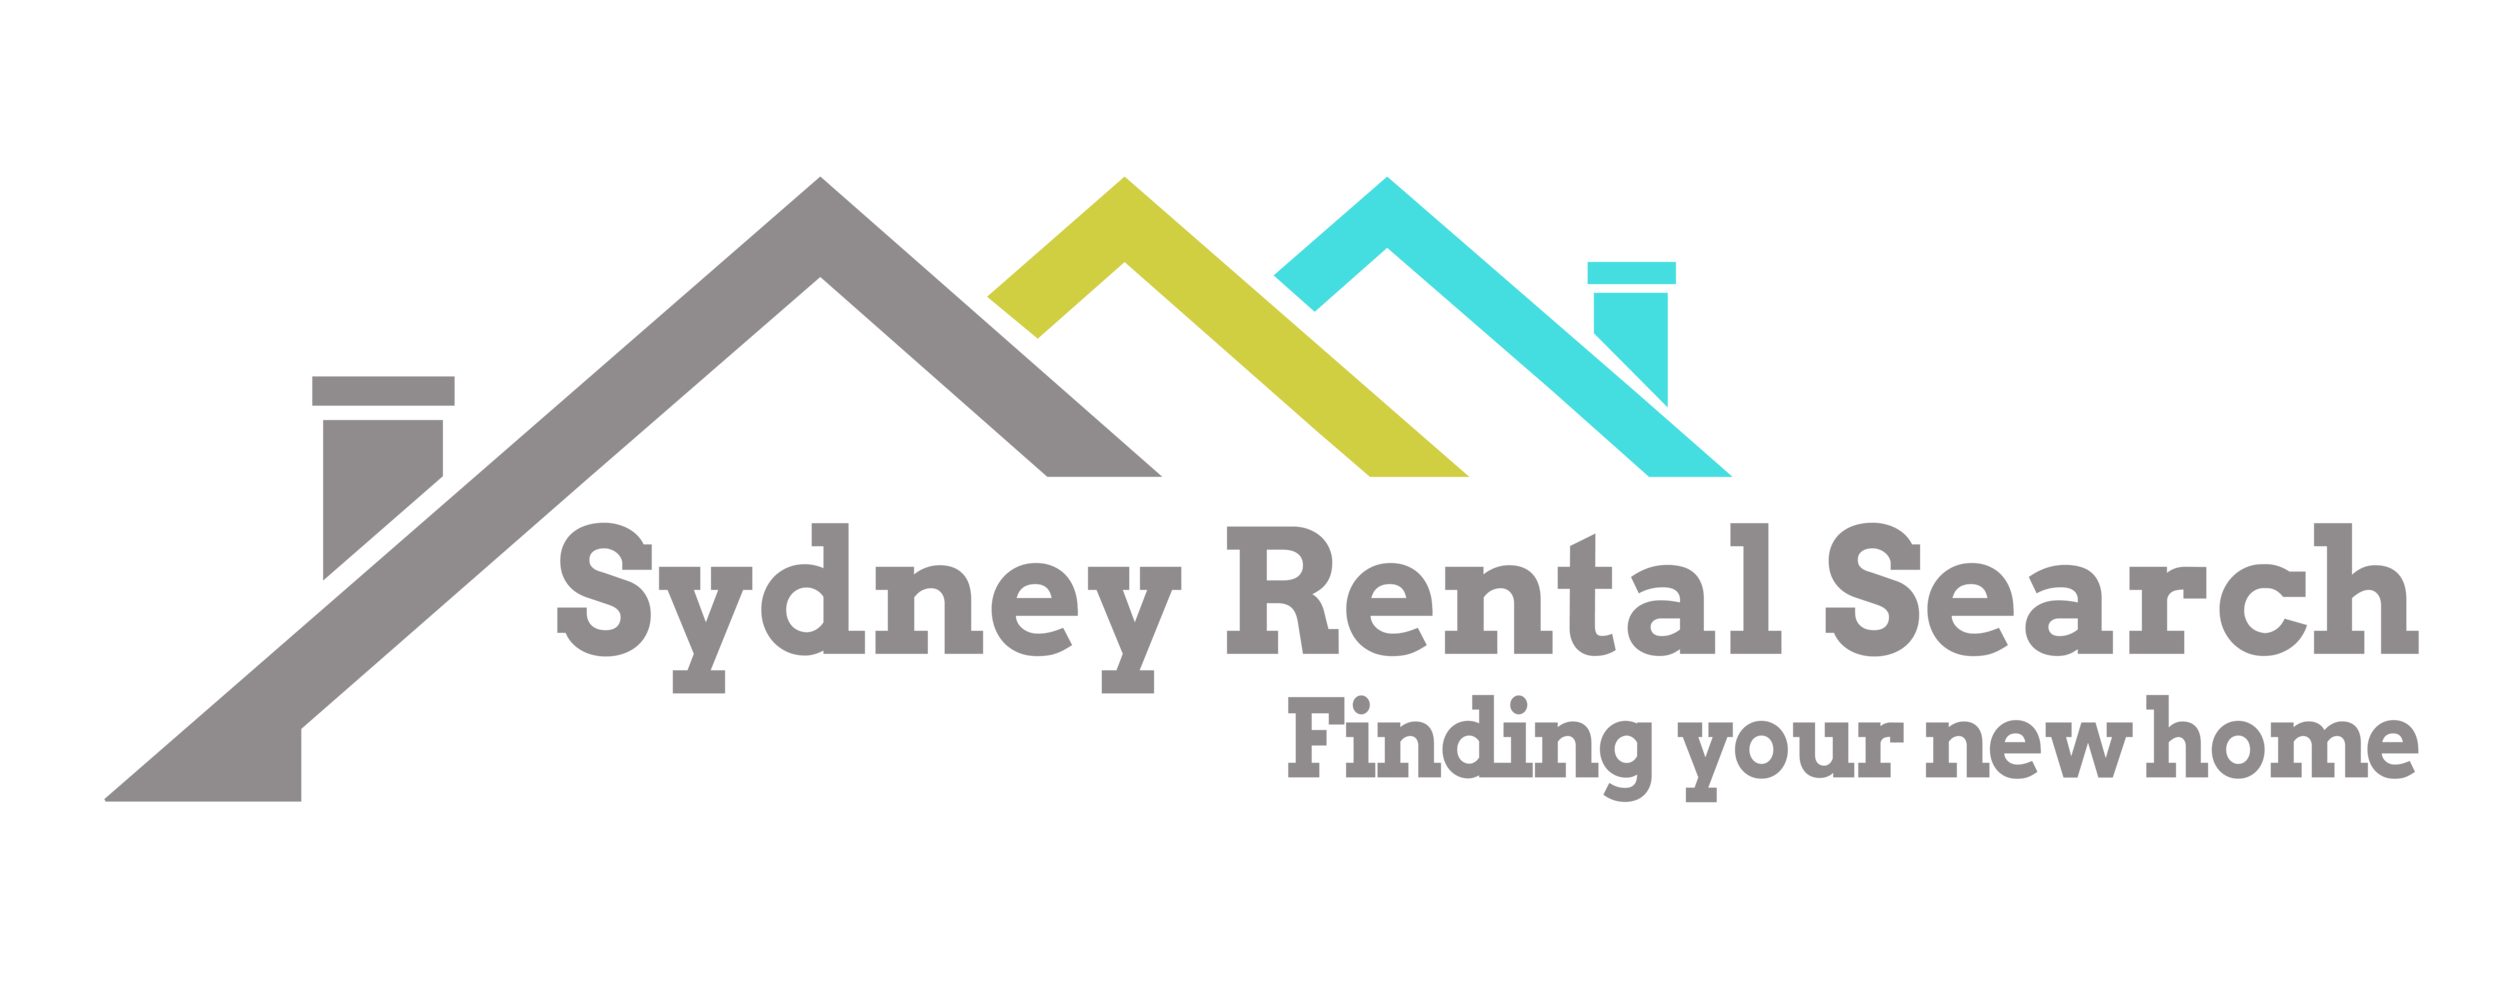 Sydney Rental Search